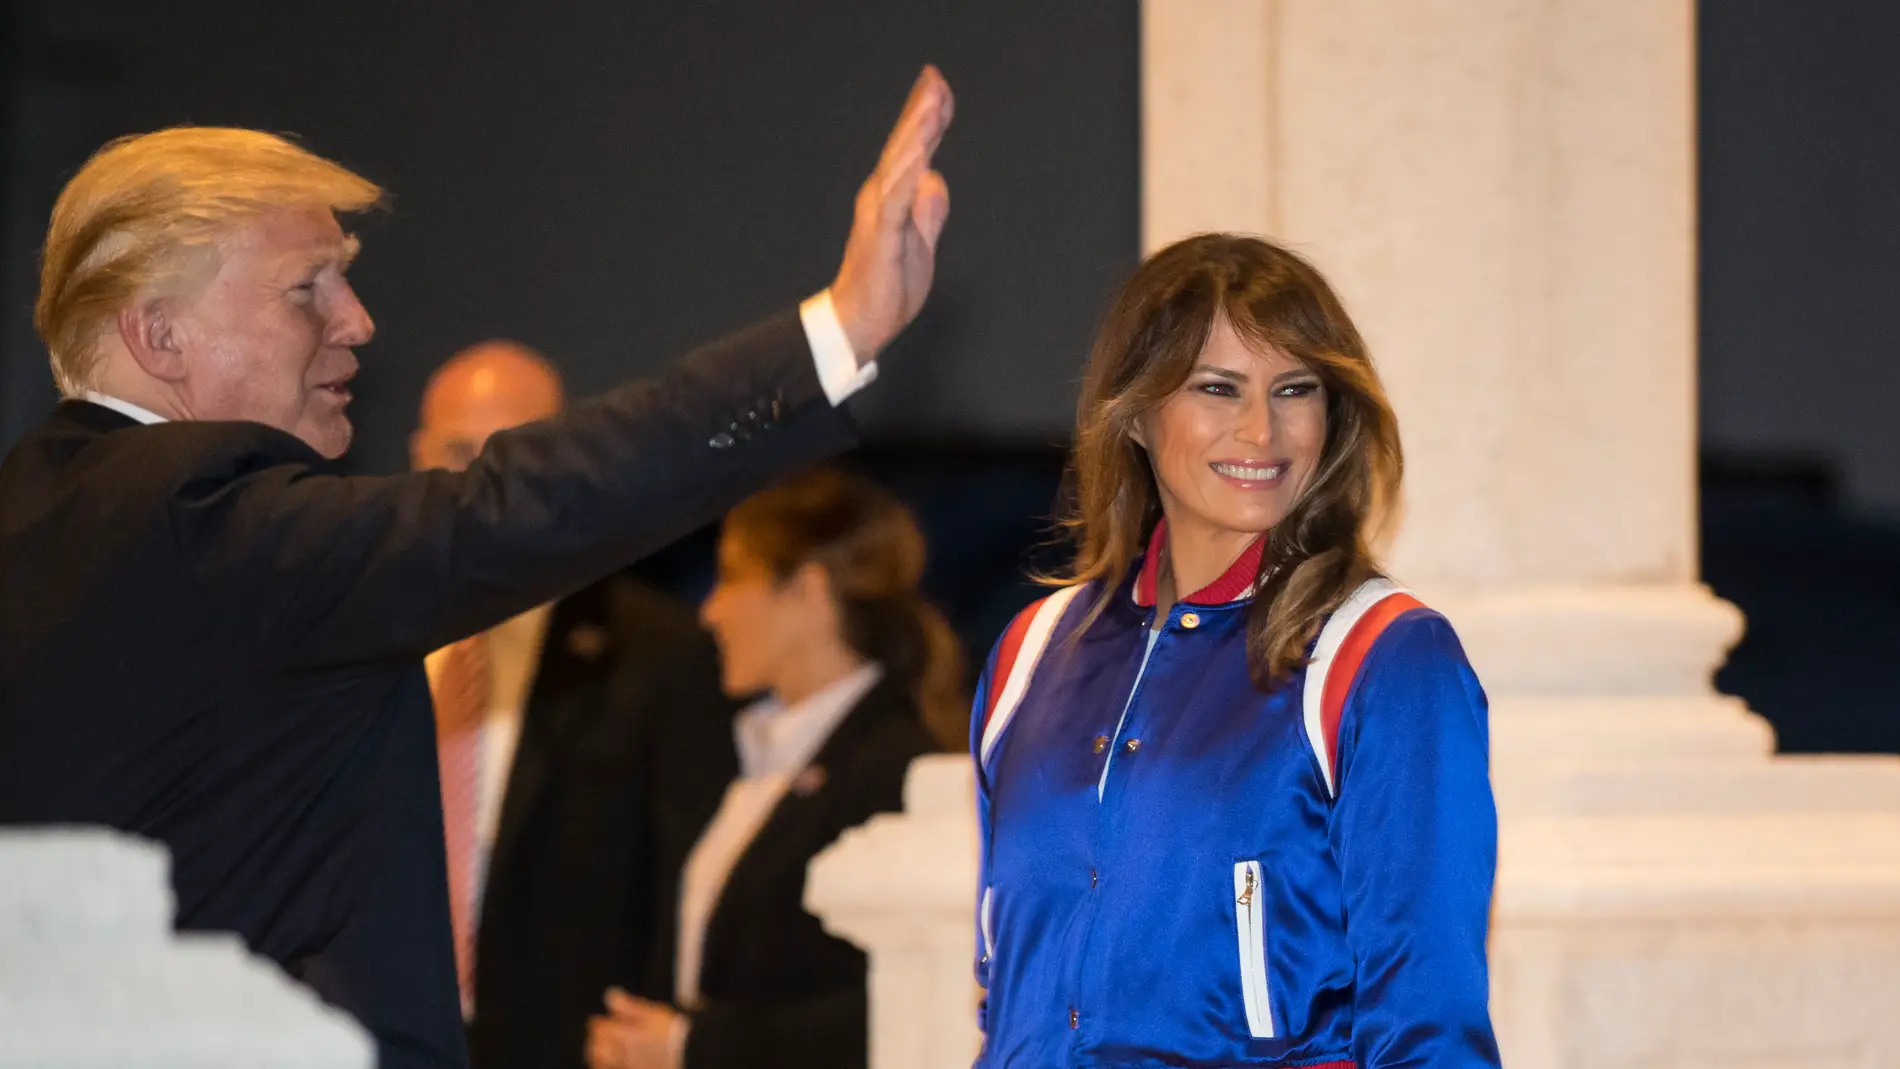 Donald y Melania Trump saludan a su llegada al evento